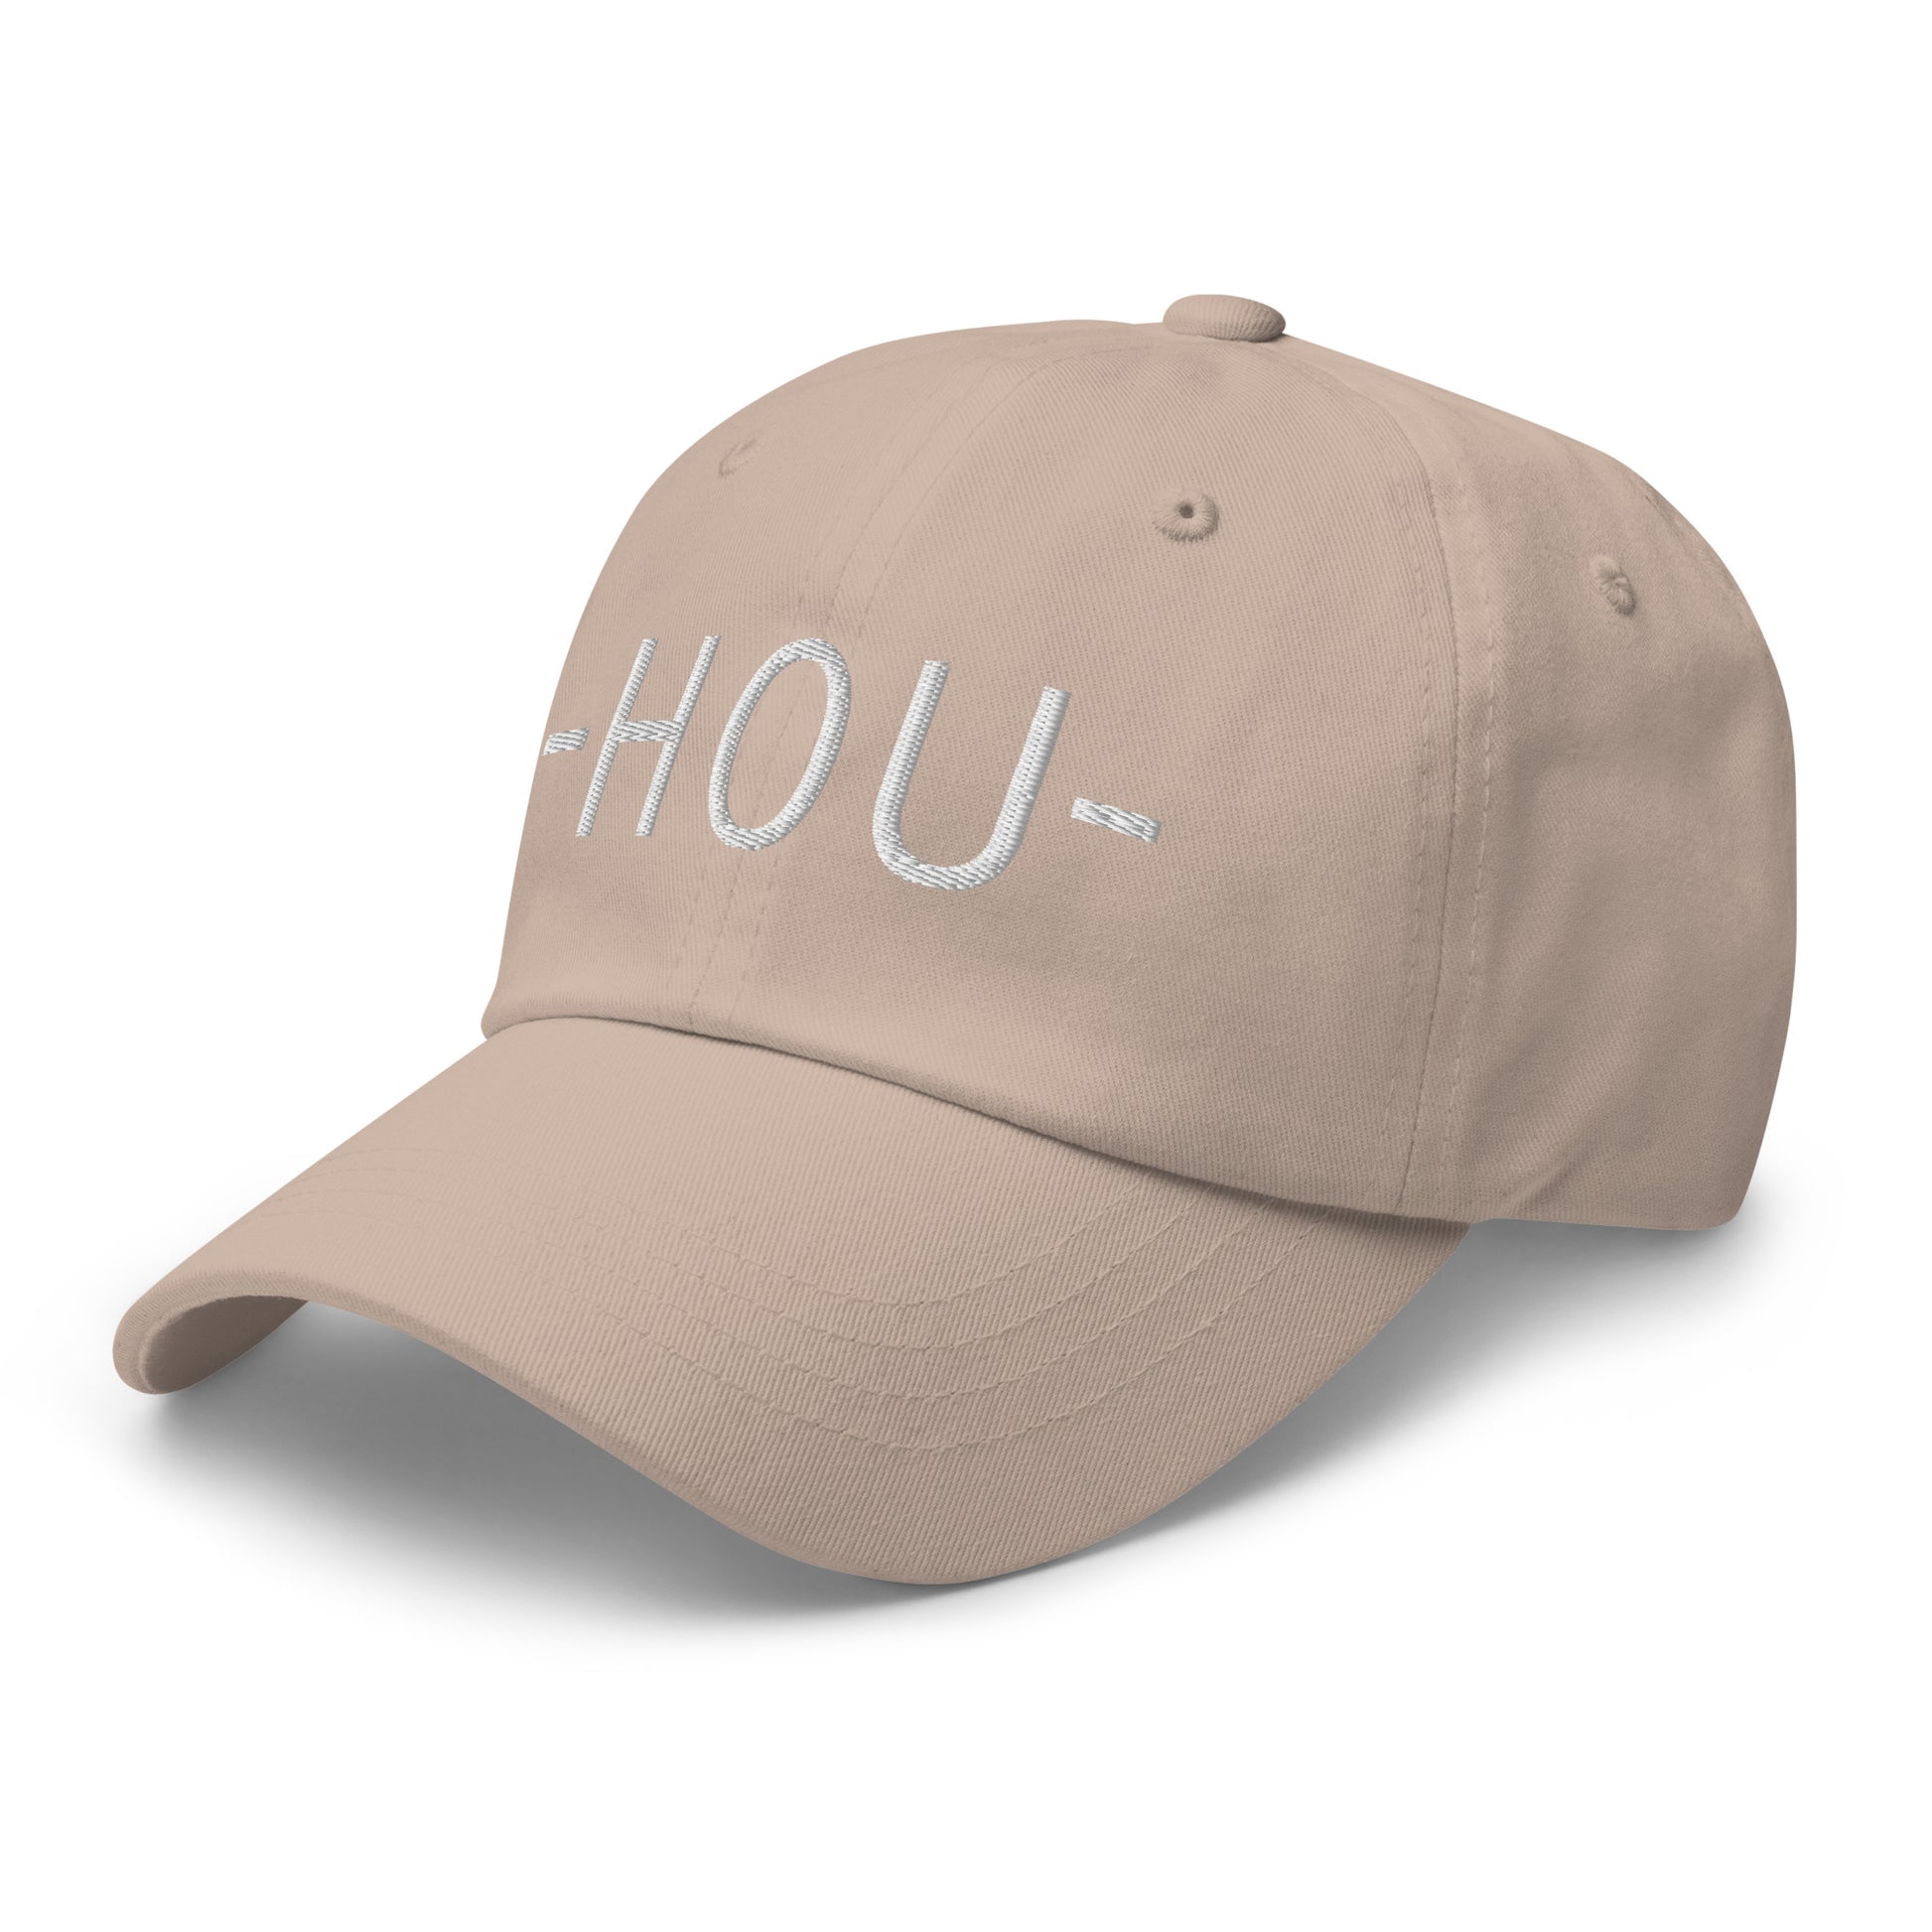 Souvenir Baseball Cap - White • HOU Houston • YHM Designs - Image 24